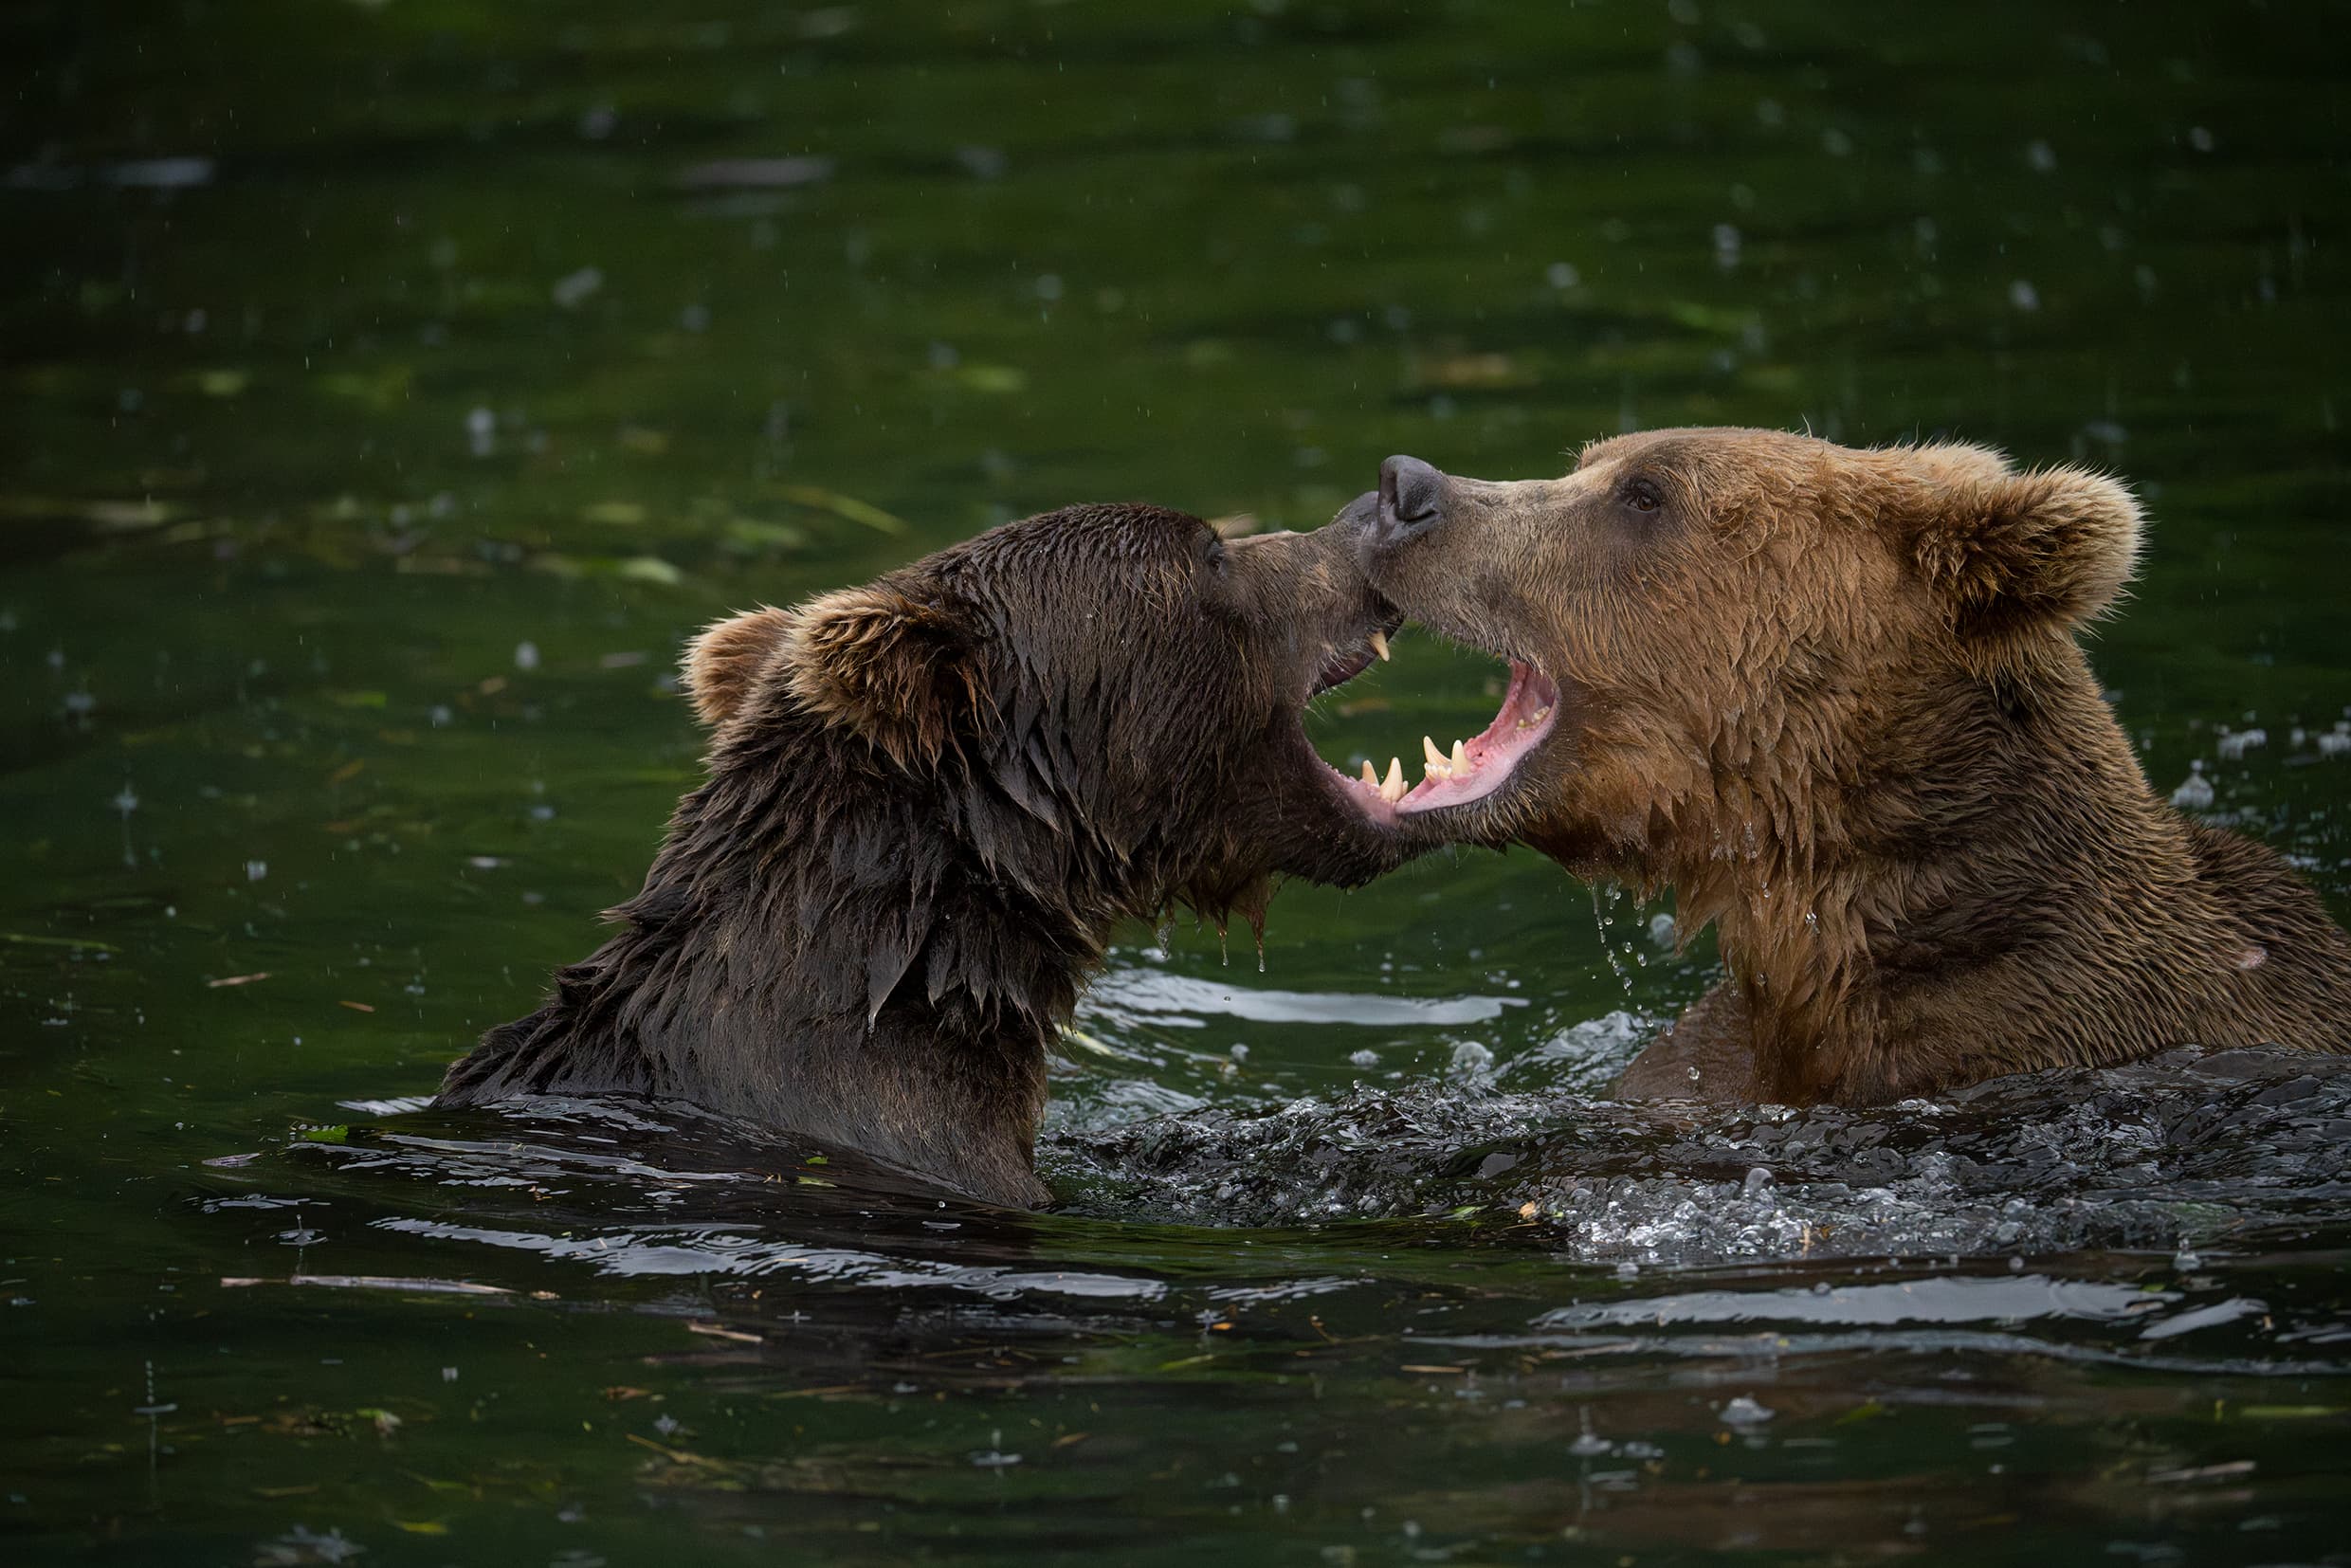 Fotka medveďov vo vode fotená pomocou objektívu Tamron 150-500mm pre Nikon Z